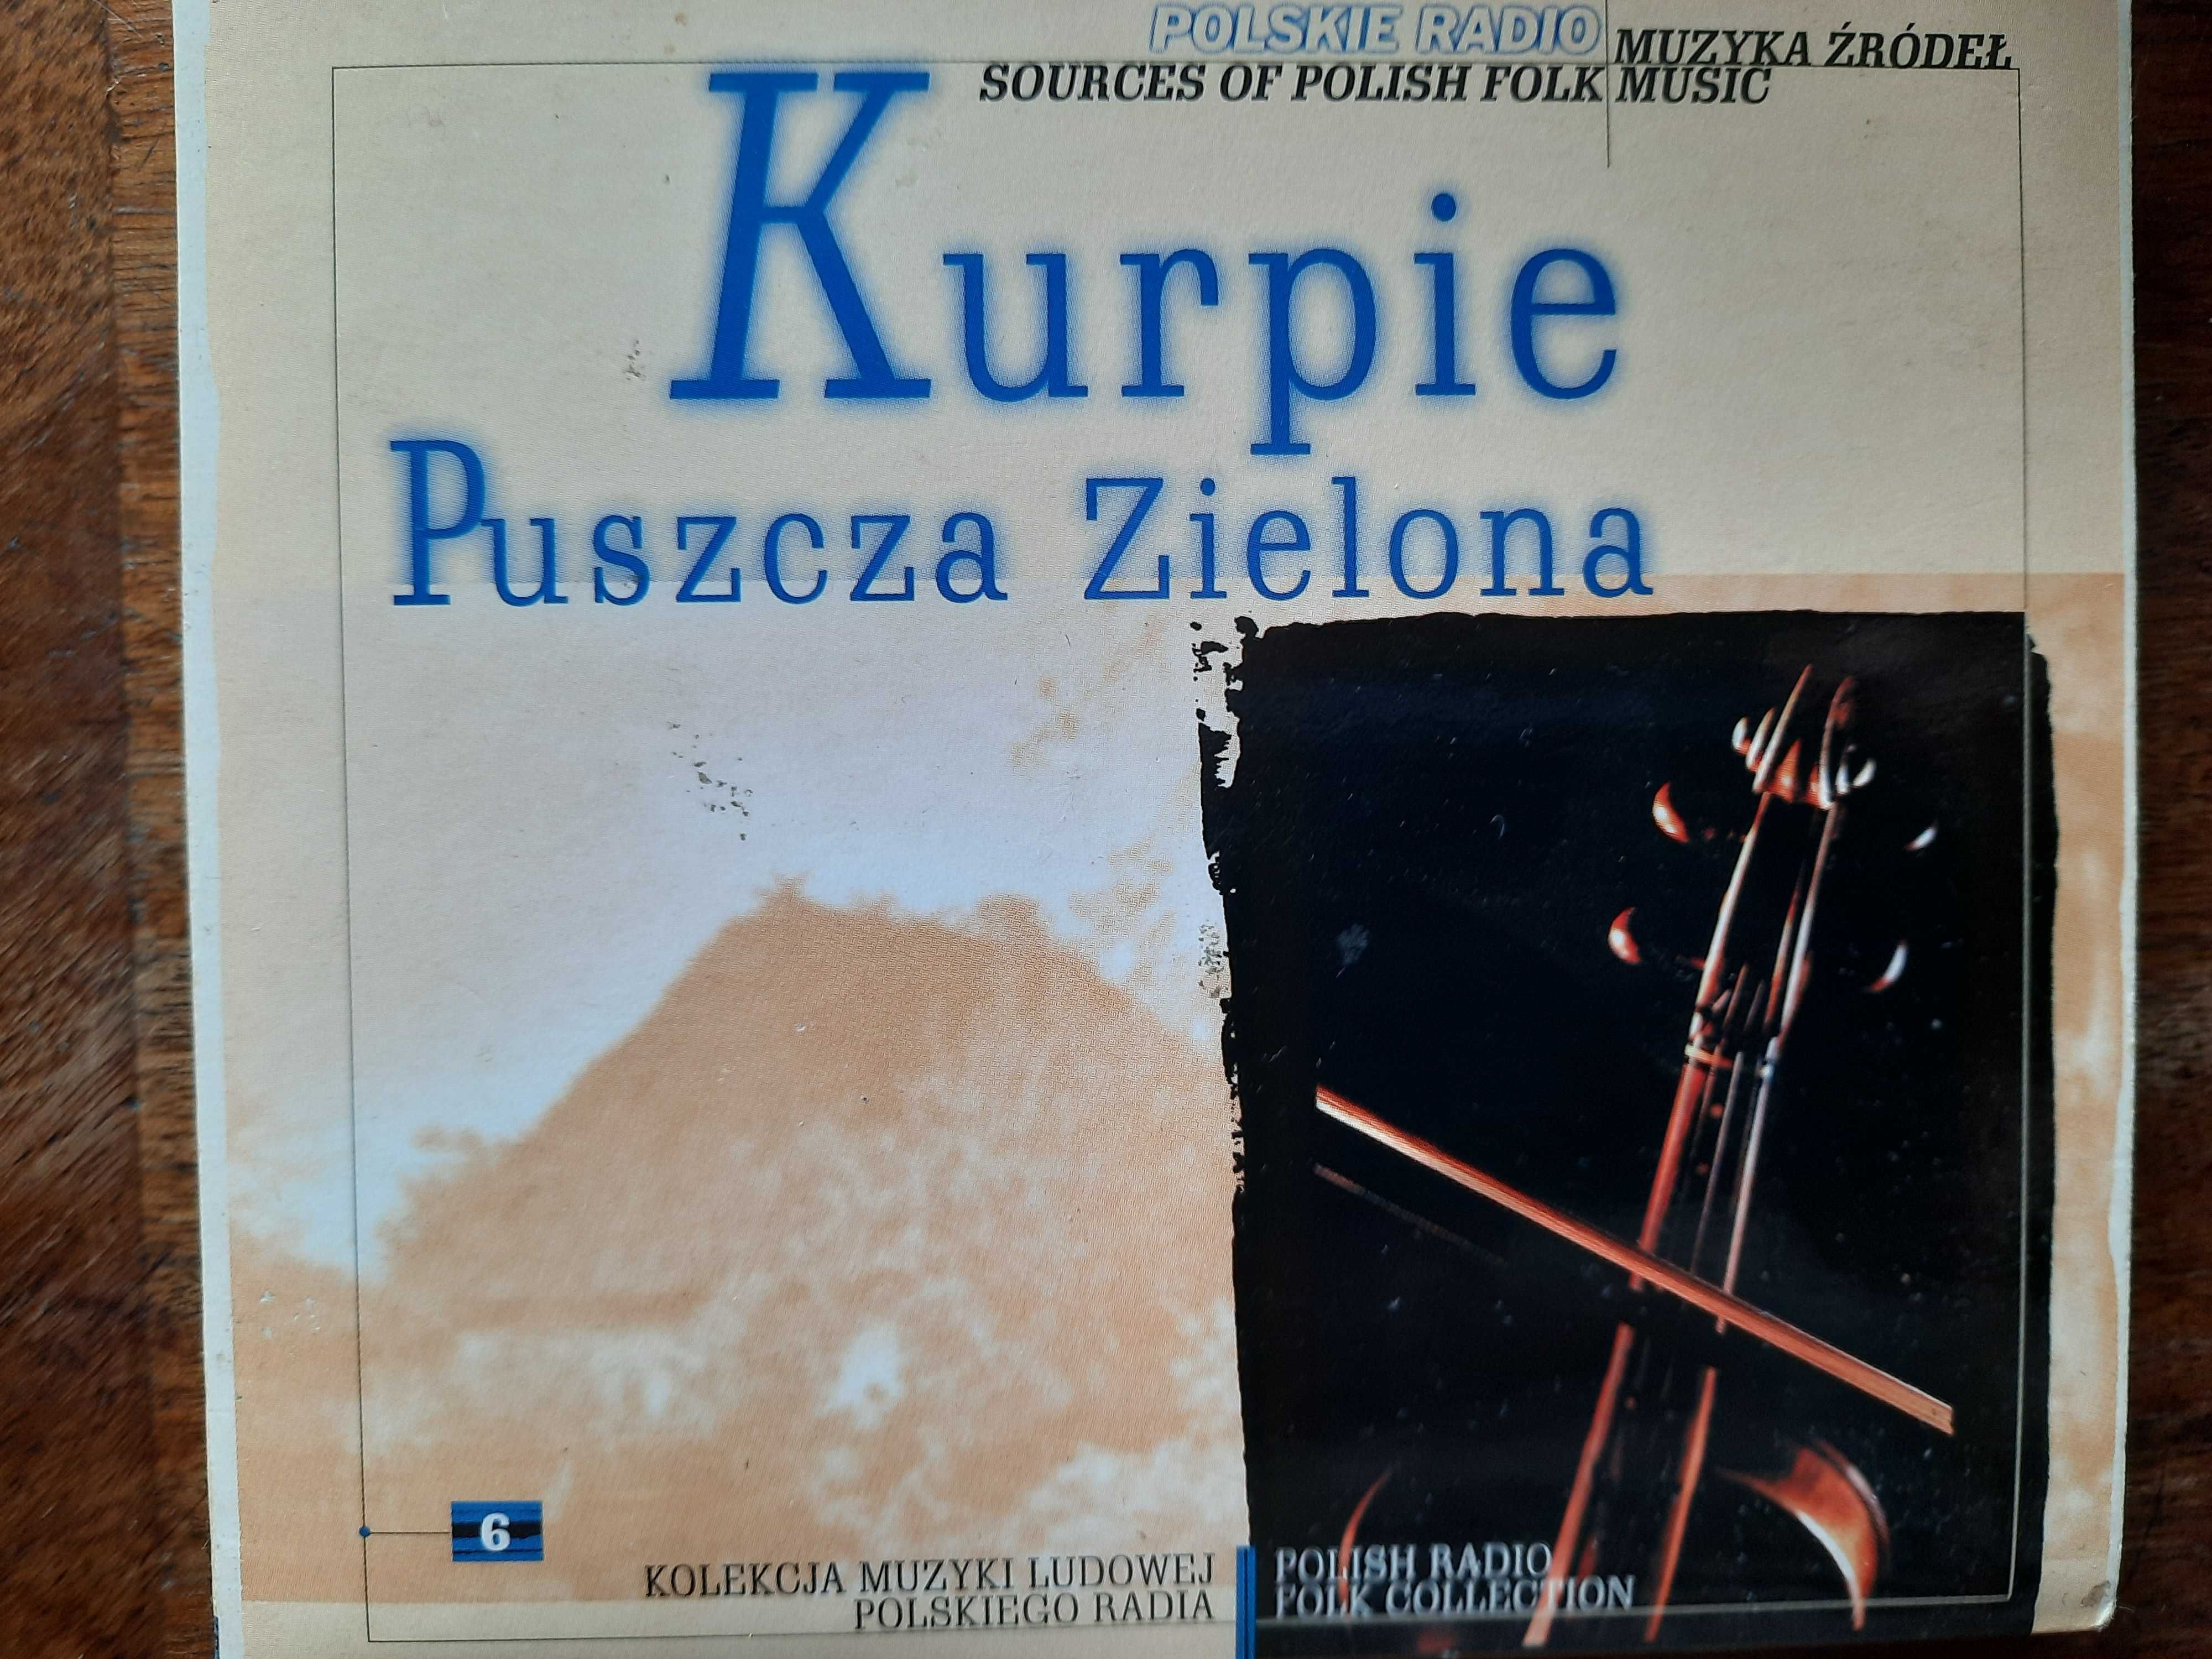 Muzyka źródeł - komplet płyt z różnych regionów Polski